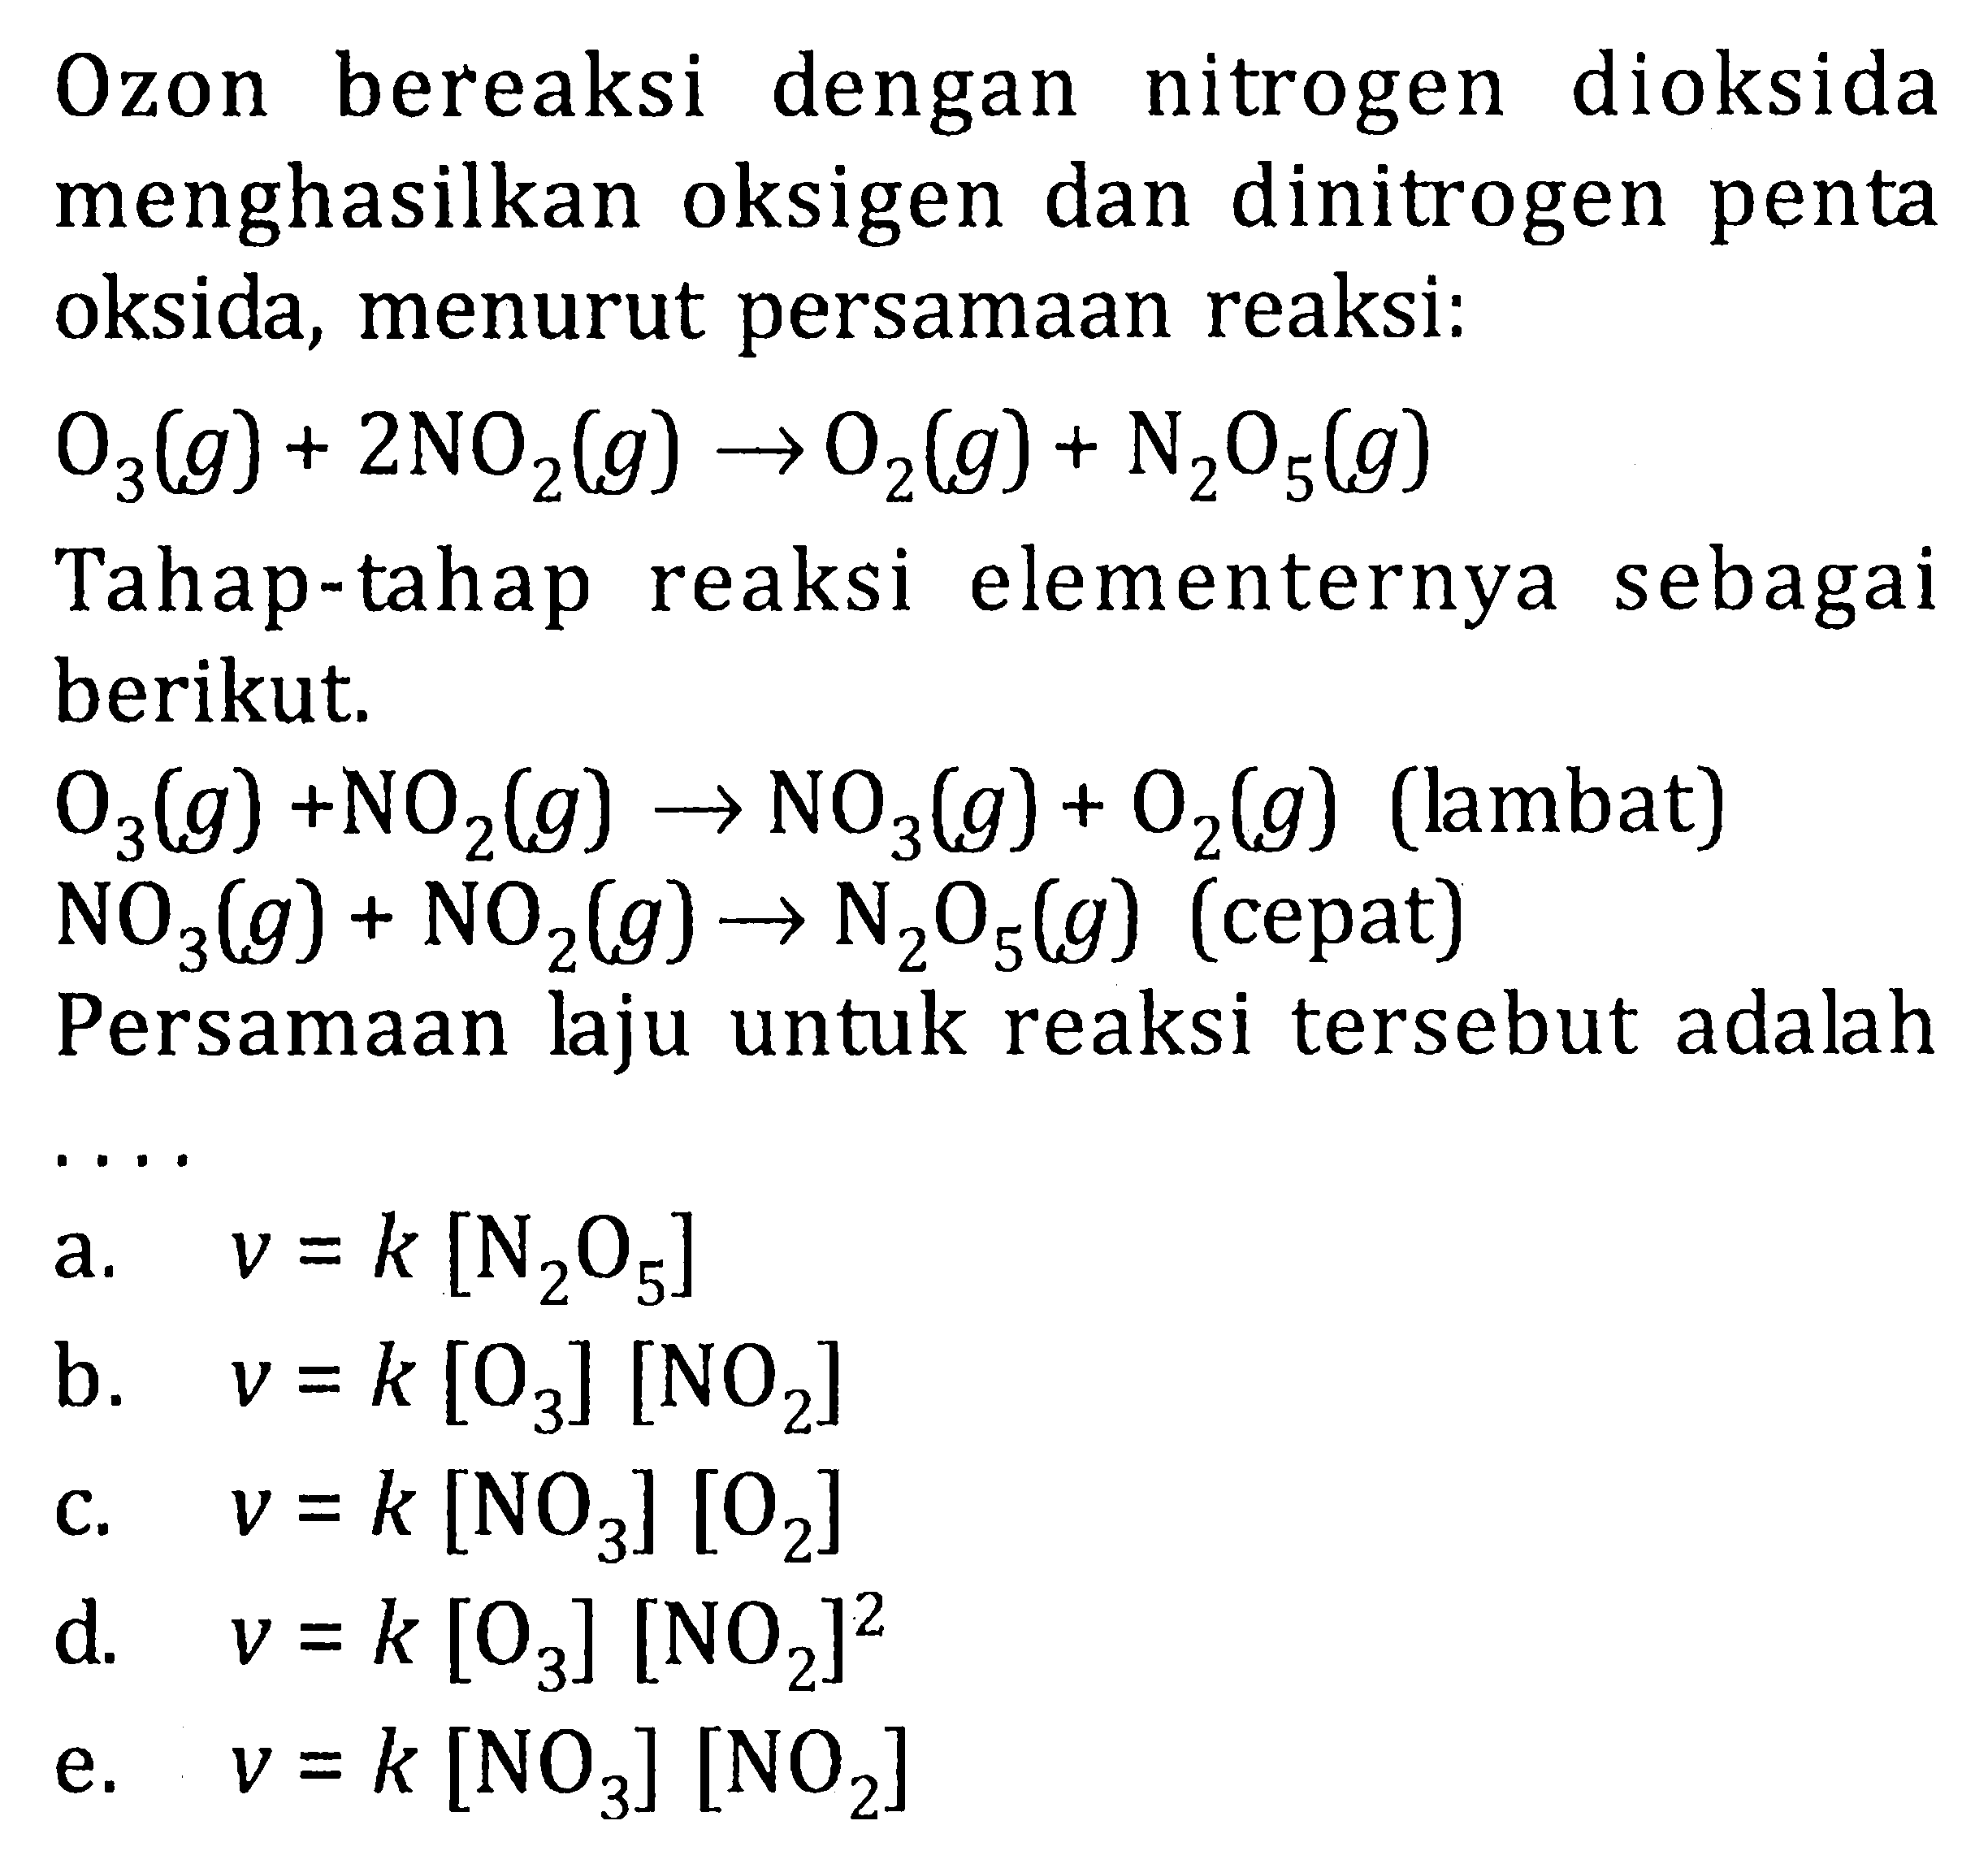 O2on bereaksi dengan nitrogen dioksida menghasilkan oksigen dan dinitrogen penta oksida, menurut persamaan reaksi: O3(g) + 2NO2(g) -> O2(g) + N2O5(g) Tahap-tahap reaksi elementernya sebagai berikut, O3(g) +NO2(g) -> NO2(g) + O2(g) (lambat) NO3(g) + NO2(g)-> N2O5(g) (cepat) Persamaan laju untuk reaksi tersebut adalah